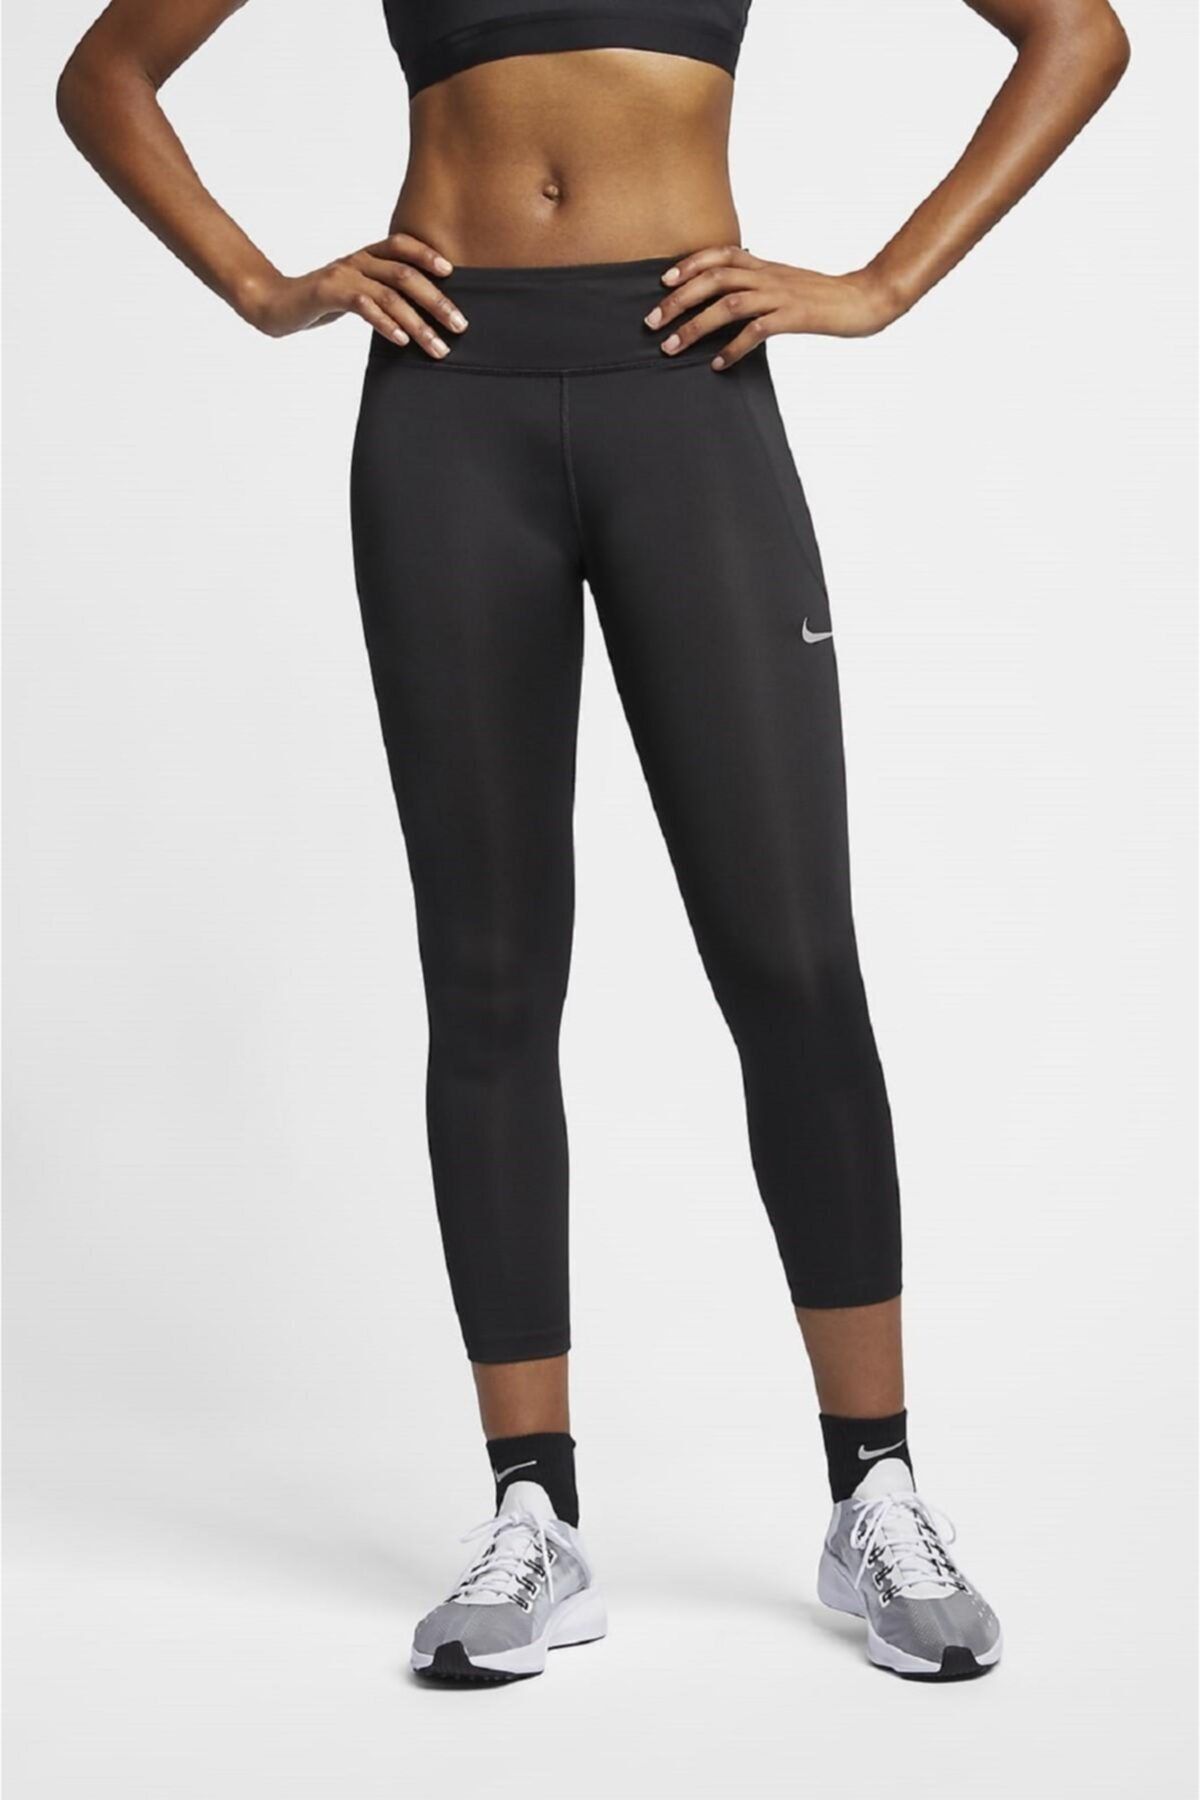 Nike Dry Normal Belli, Cepli, Toparlayıcı Kısa Koşu Taytı